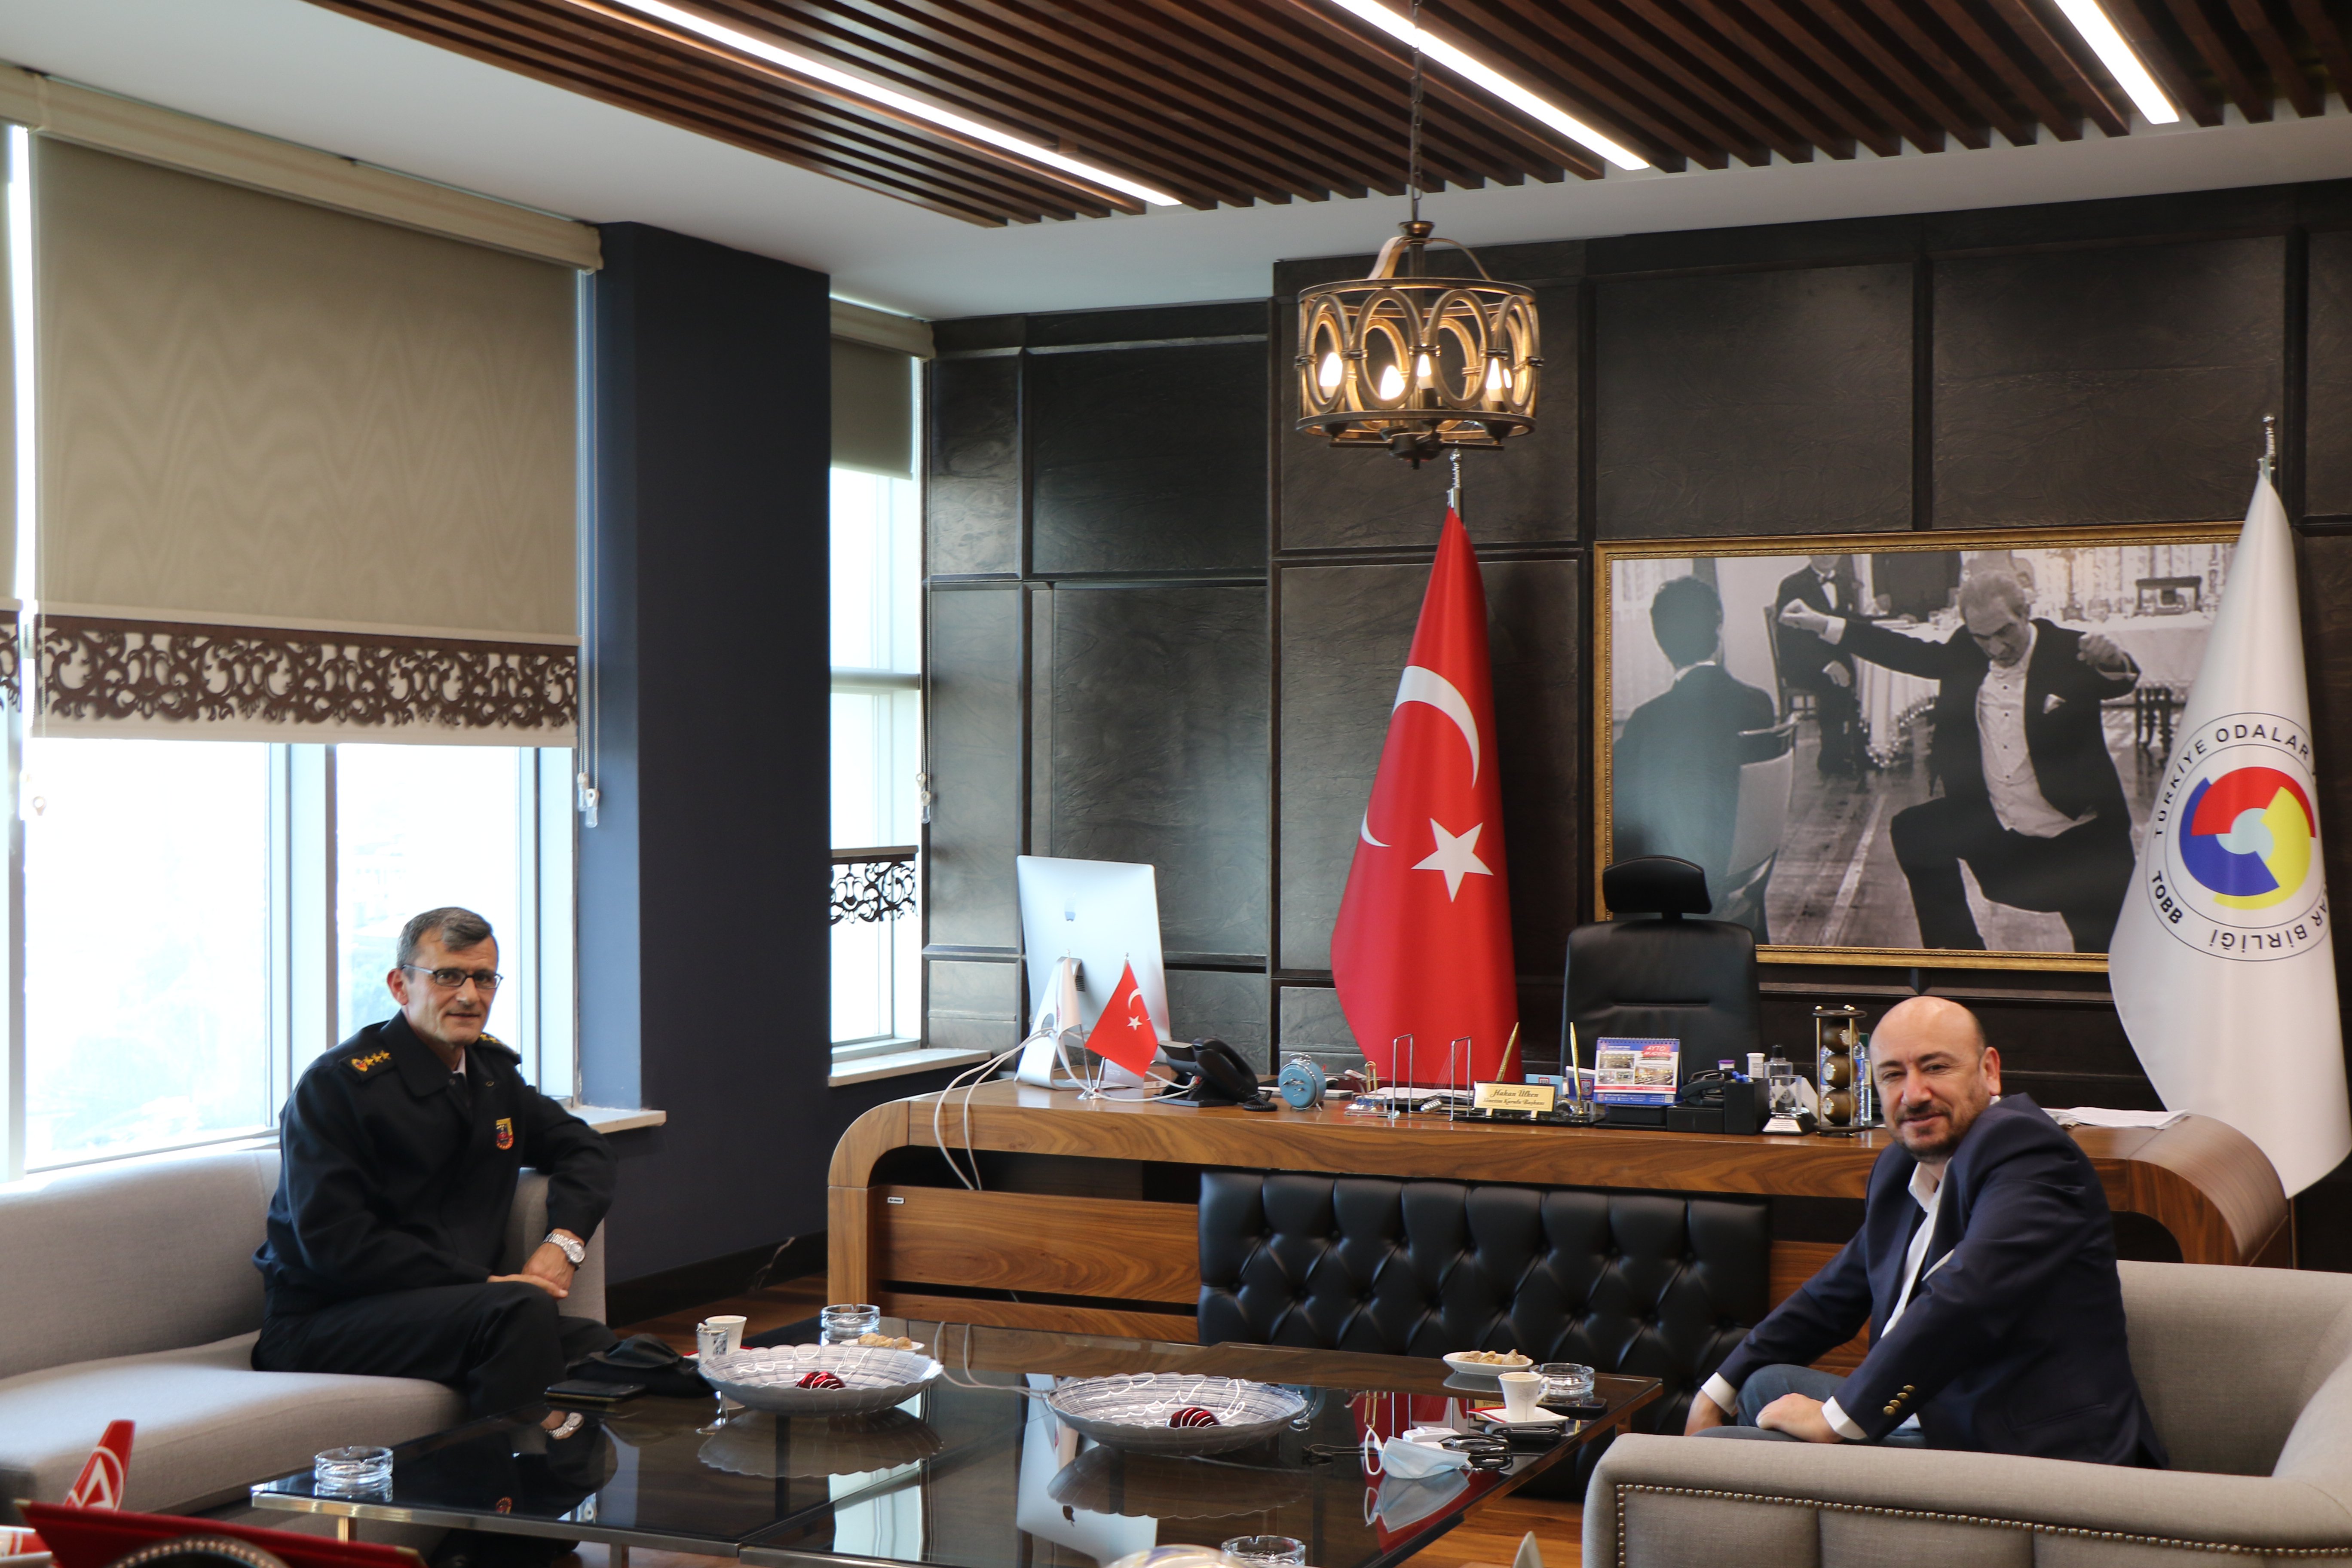 Aydın İl Jandarma Komutanı Macit ENGİN, TOBB Yönetim Kurulu Üyesi ve Odamız Başkanı Hakan ÜLKEN’i makamında ziyaret etti.